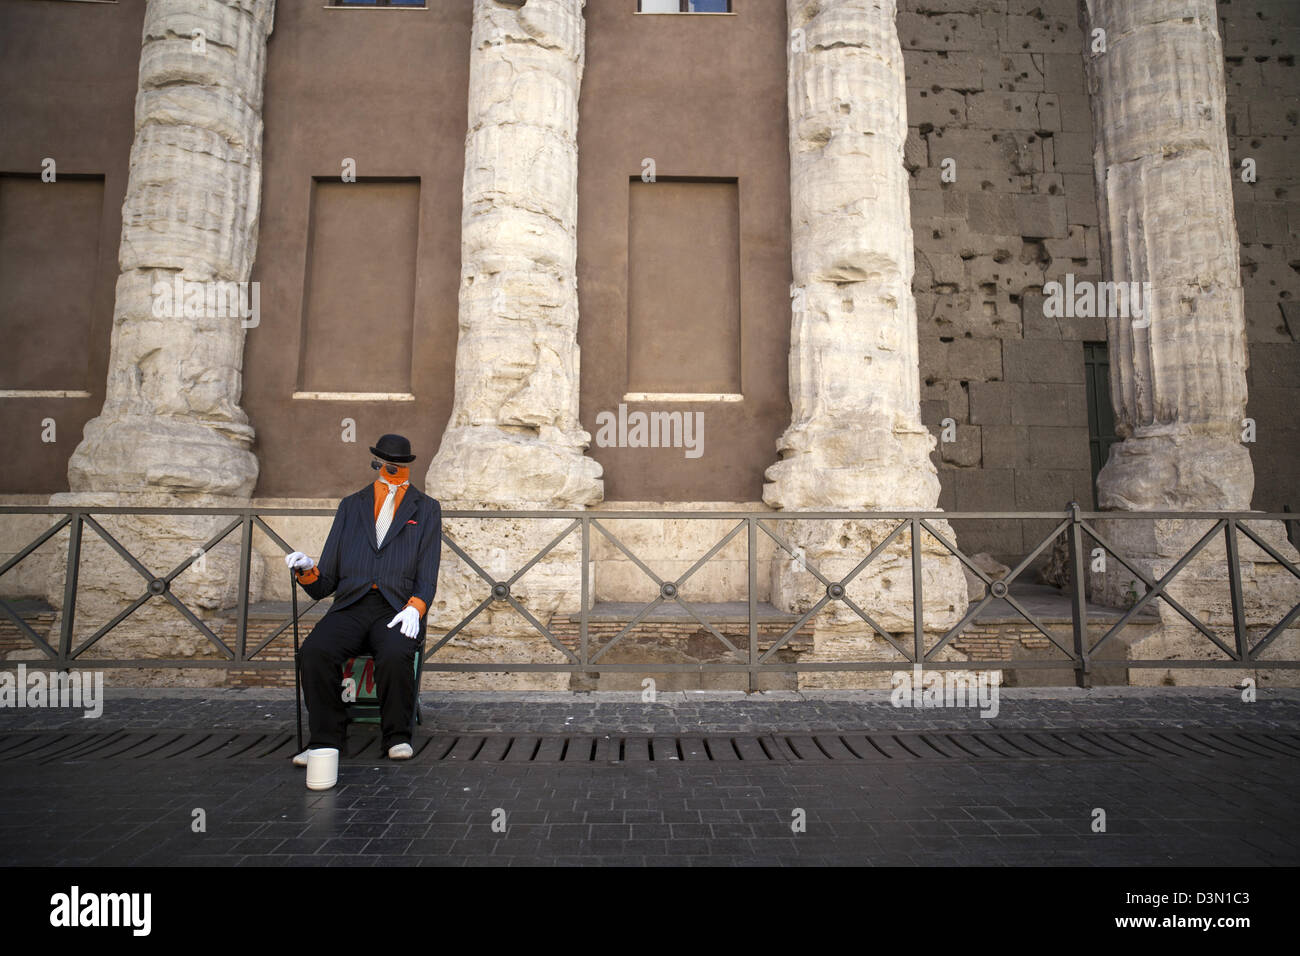 Street performance artista nella parte anteriore delle vecchie colonne romane a Roma Italia Foto Stock